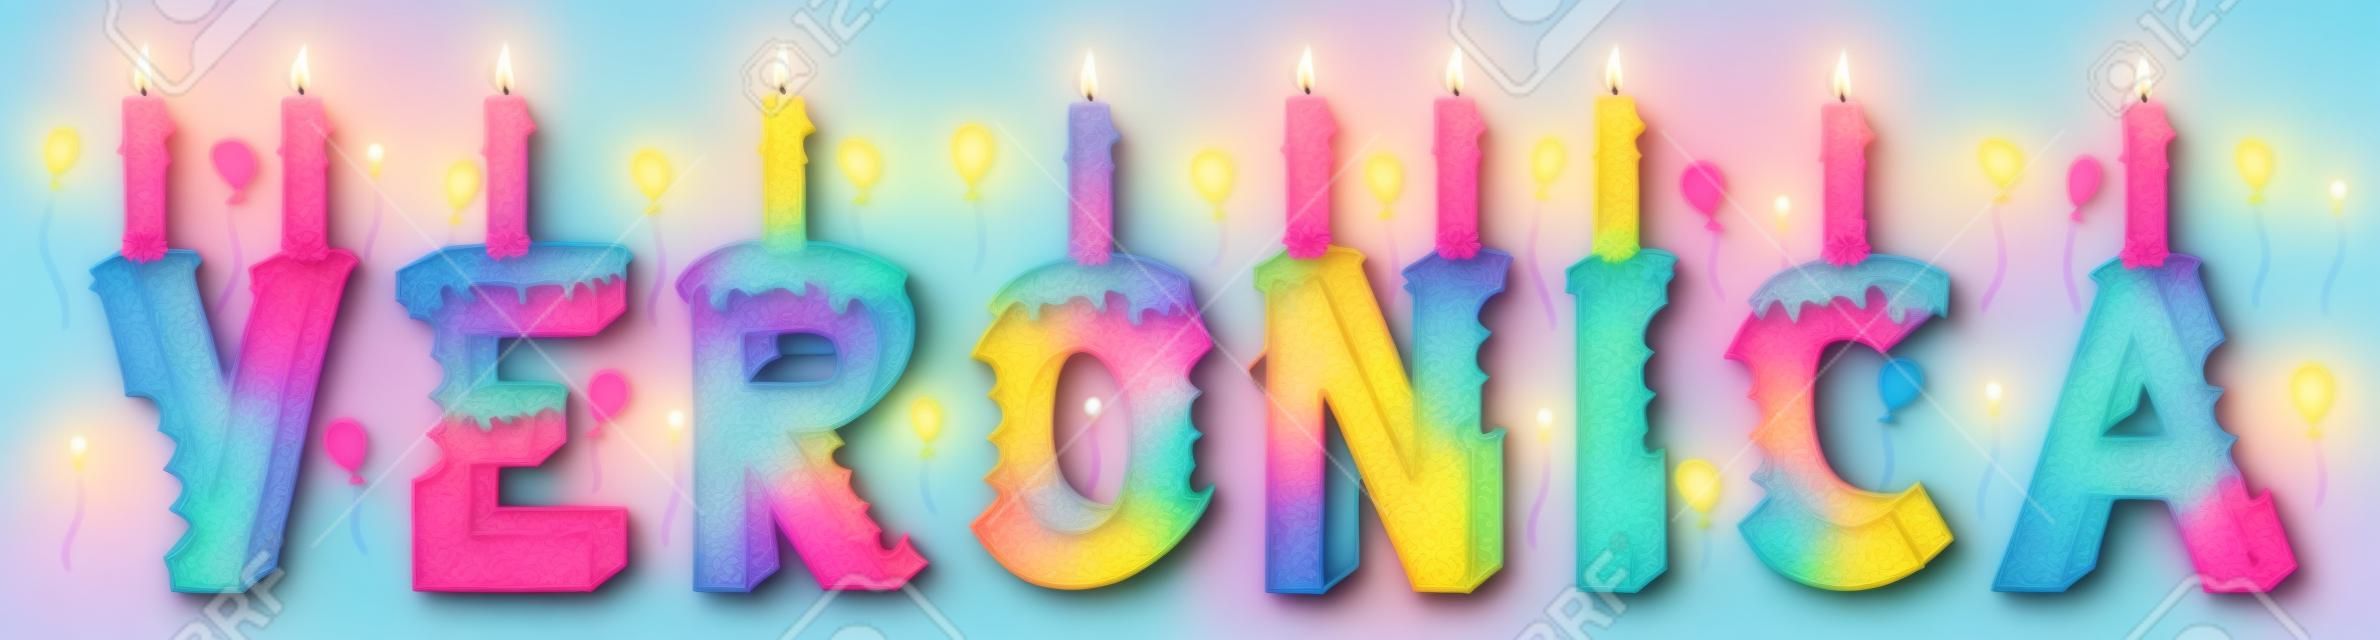 베로니카 여성 이름은 물렸다. 촛불과 풍선으로 화려한 3d 레터링 생일 케이크.